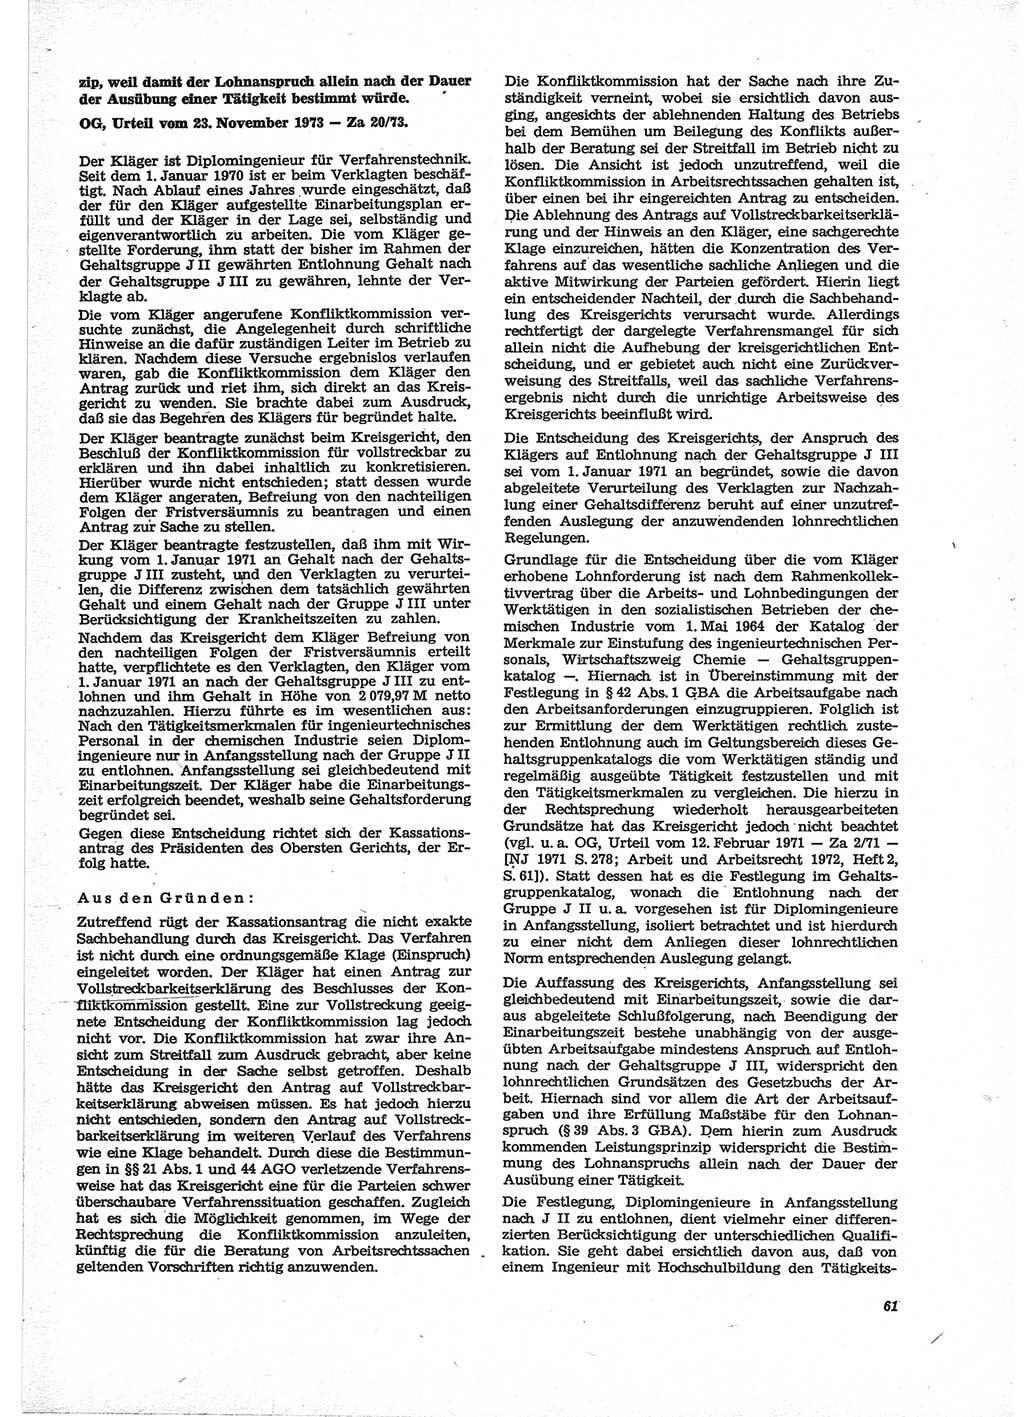 Neue Justiz (NJ), Zeitschrift für Recht und Rechtswissenschaft [Deutsche Demokratische Republik (DDR)], 28. Jahrgang 1974, Seite 61 (NJ DDR 1974, S. 61)